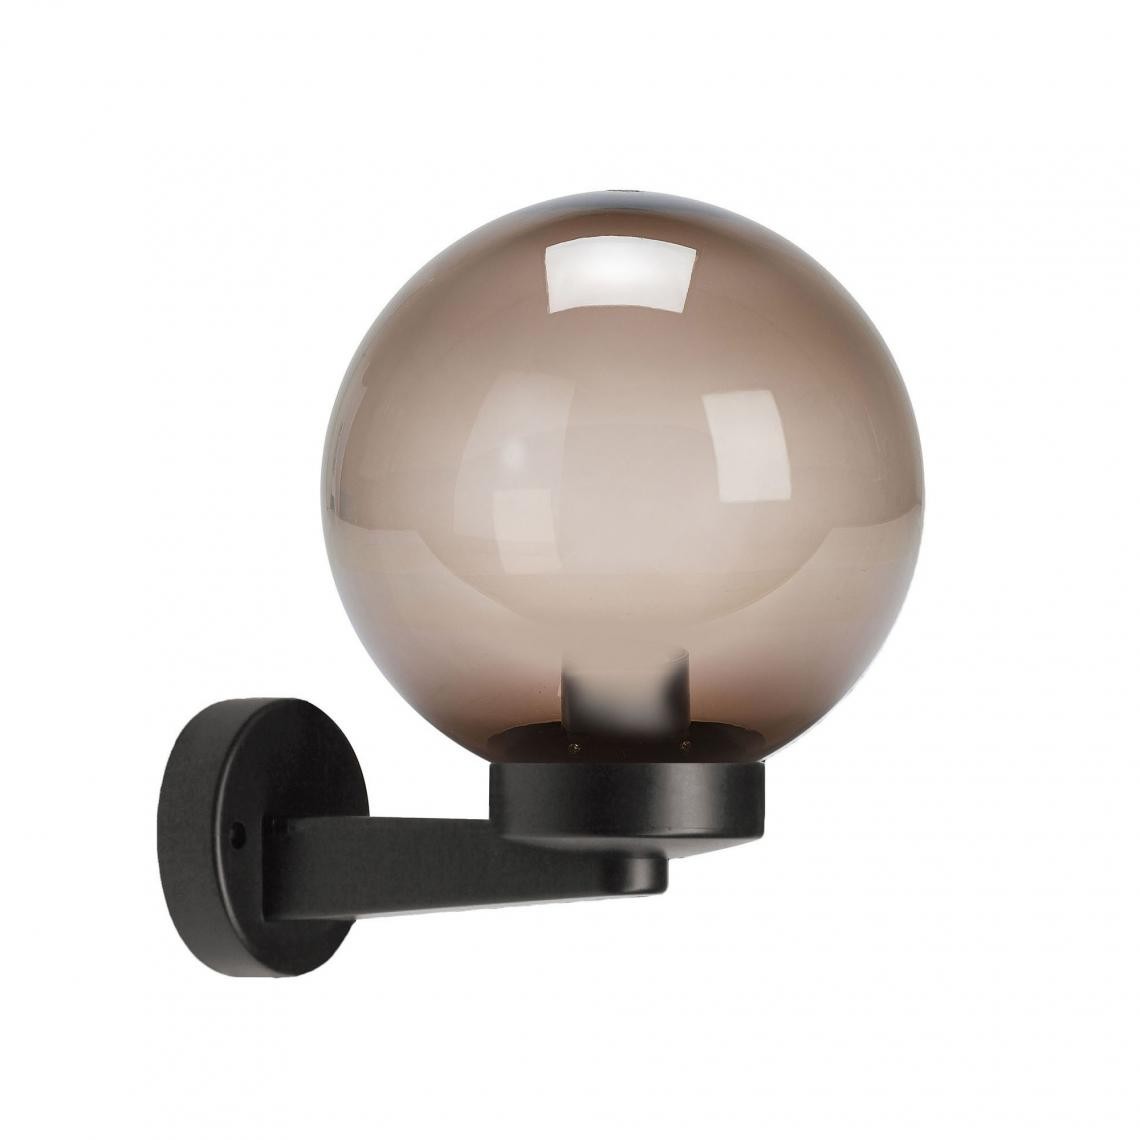 Velamp - Applique avec sphère pour extérieur en PMMA, 200mm, Culot E27, ambré - Applique, hublot